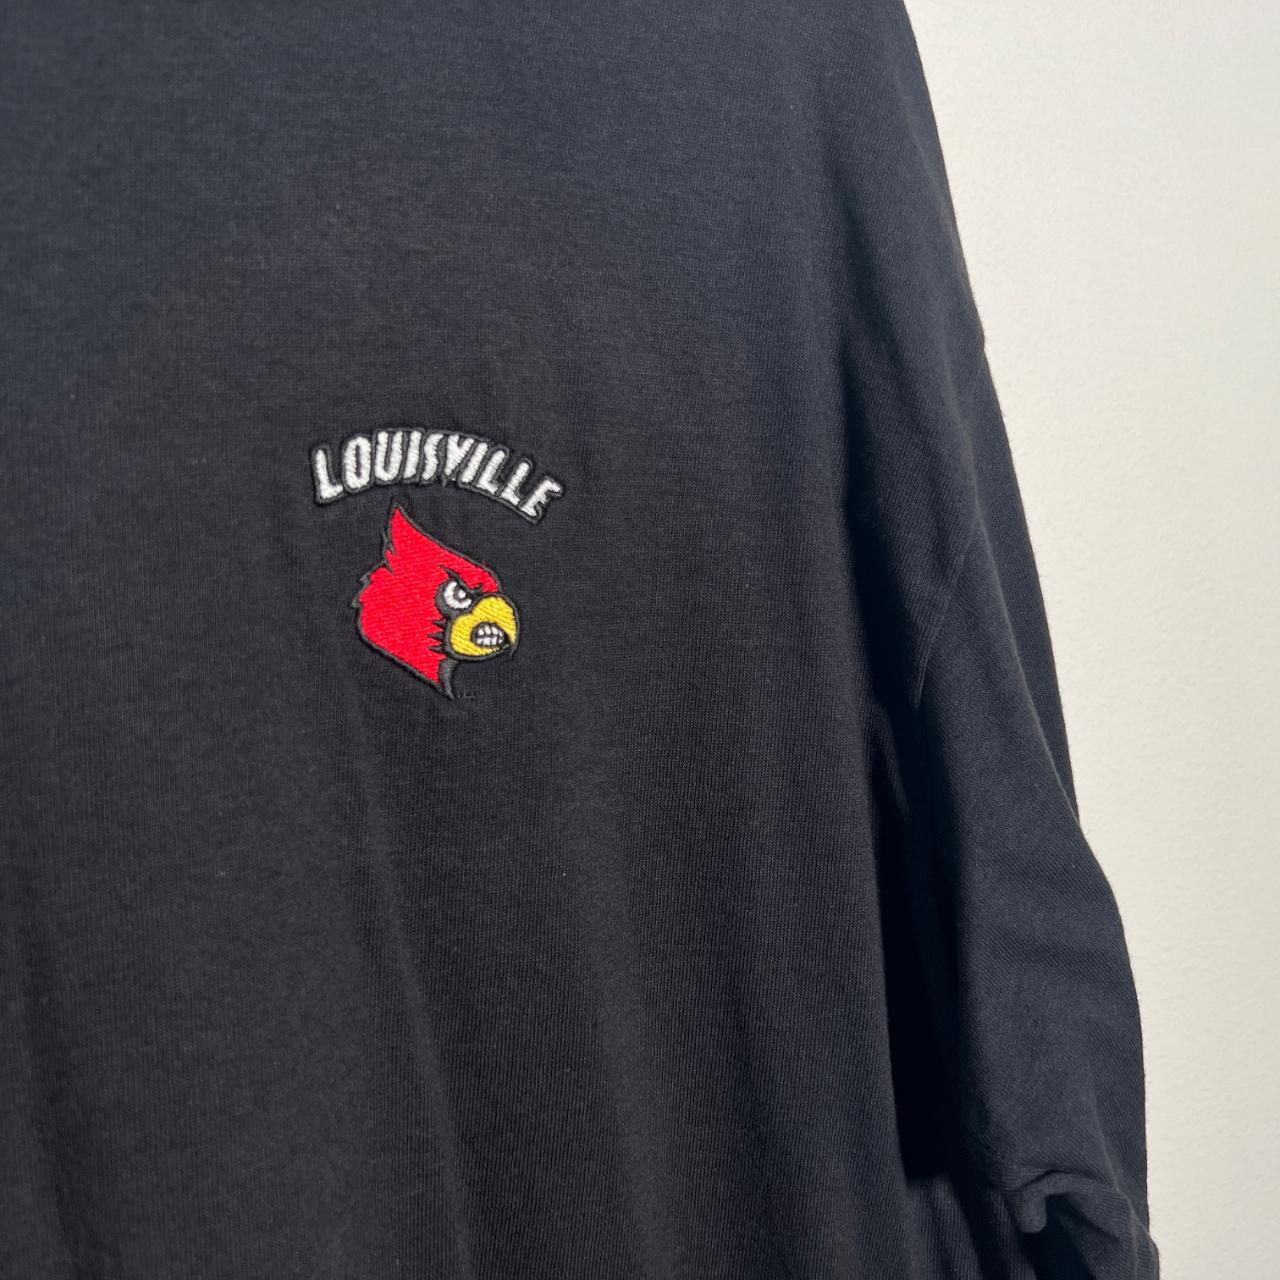 Vintage University of Louisville Cardinals 90's Satin 